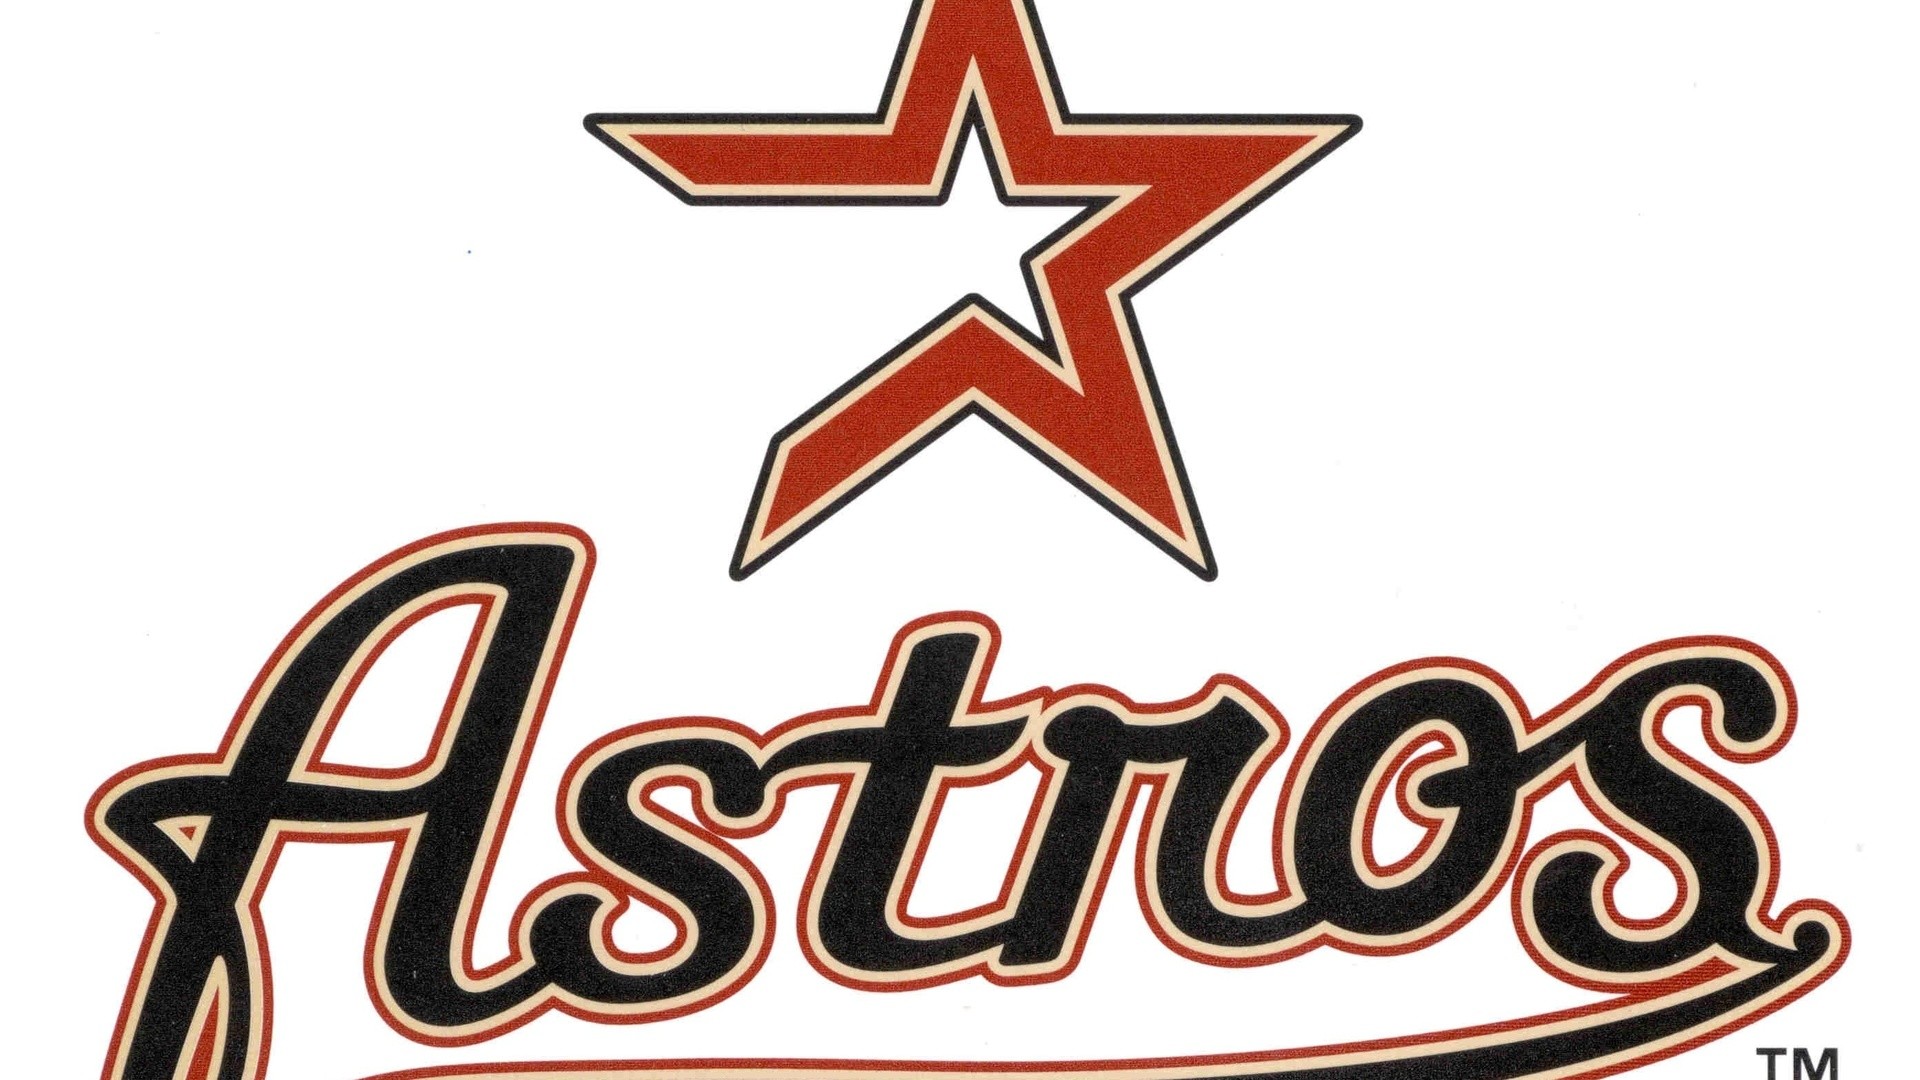 1920x1080 Houston Astros Mlb Logo, Baseball, Houston Astros, Mlb, Sports